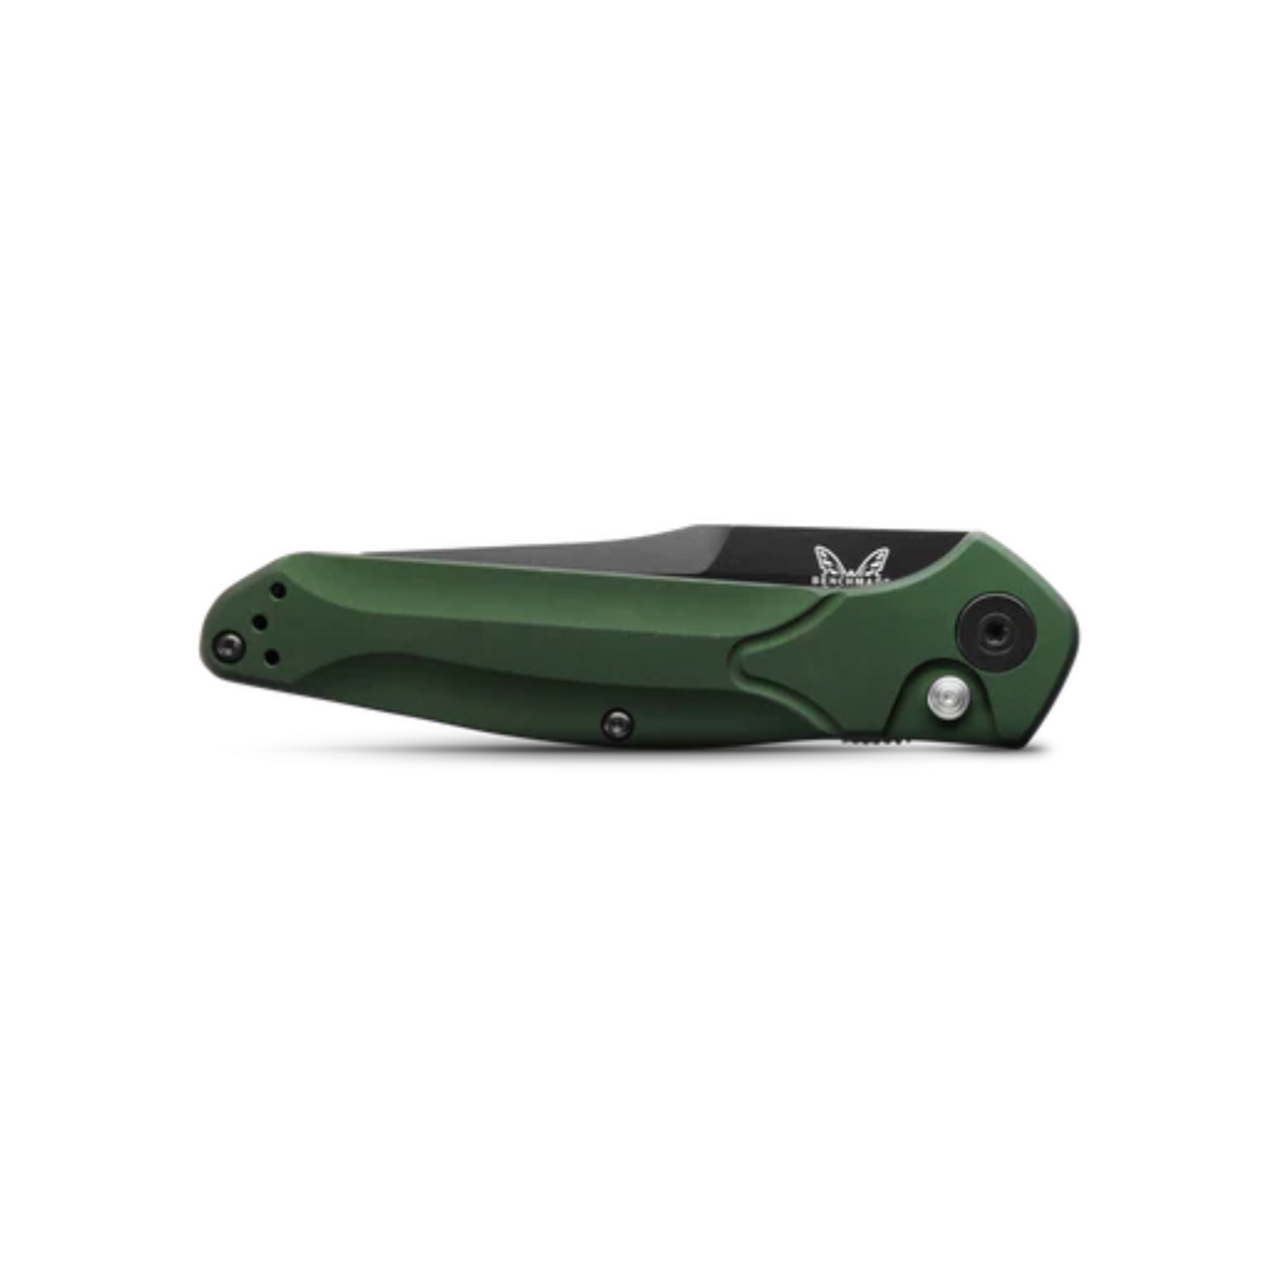 9400BK Auto Osbourne | Green Aluminum Knife